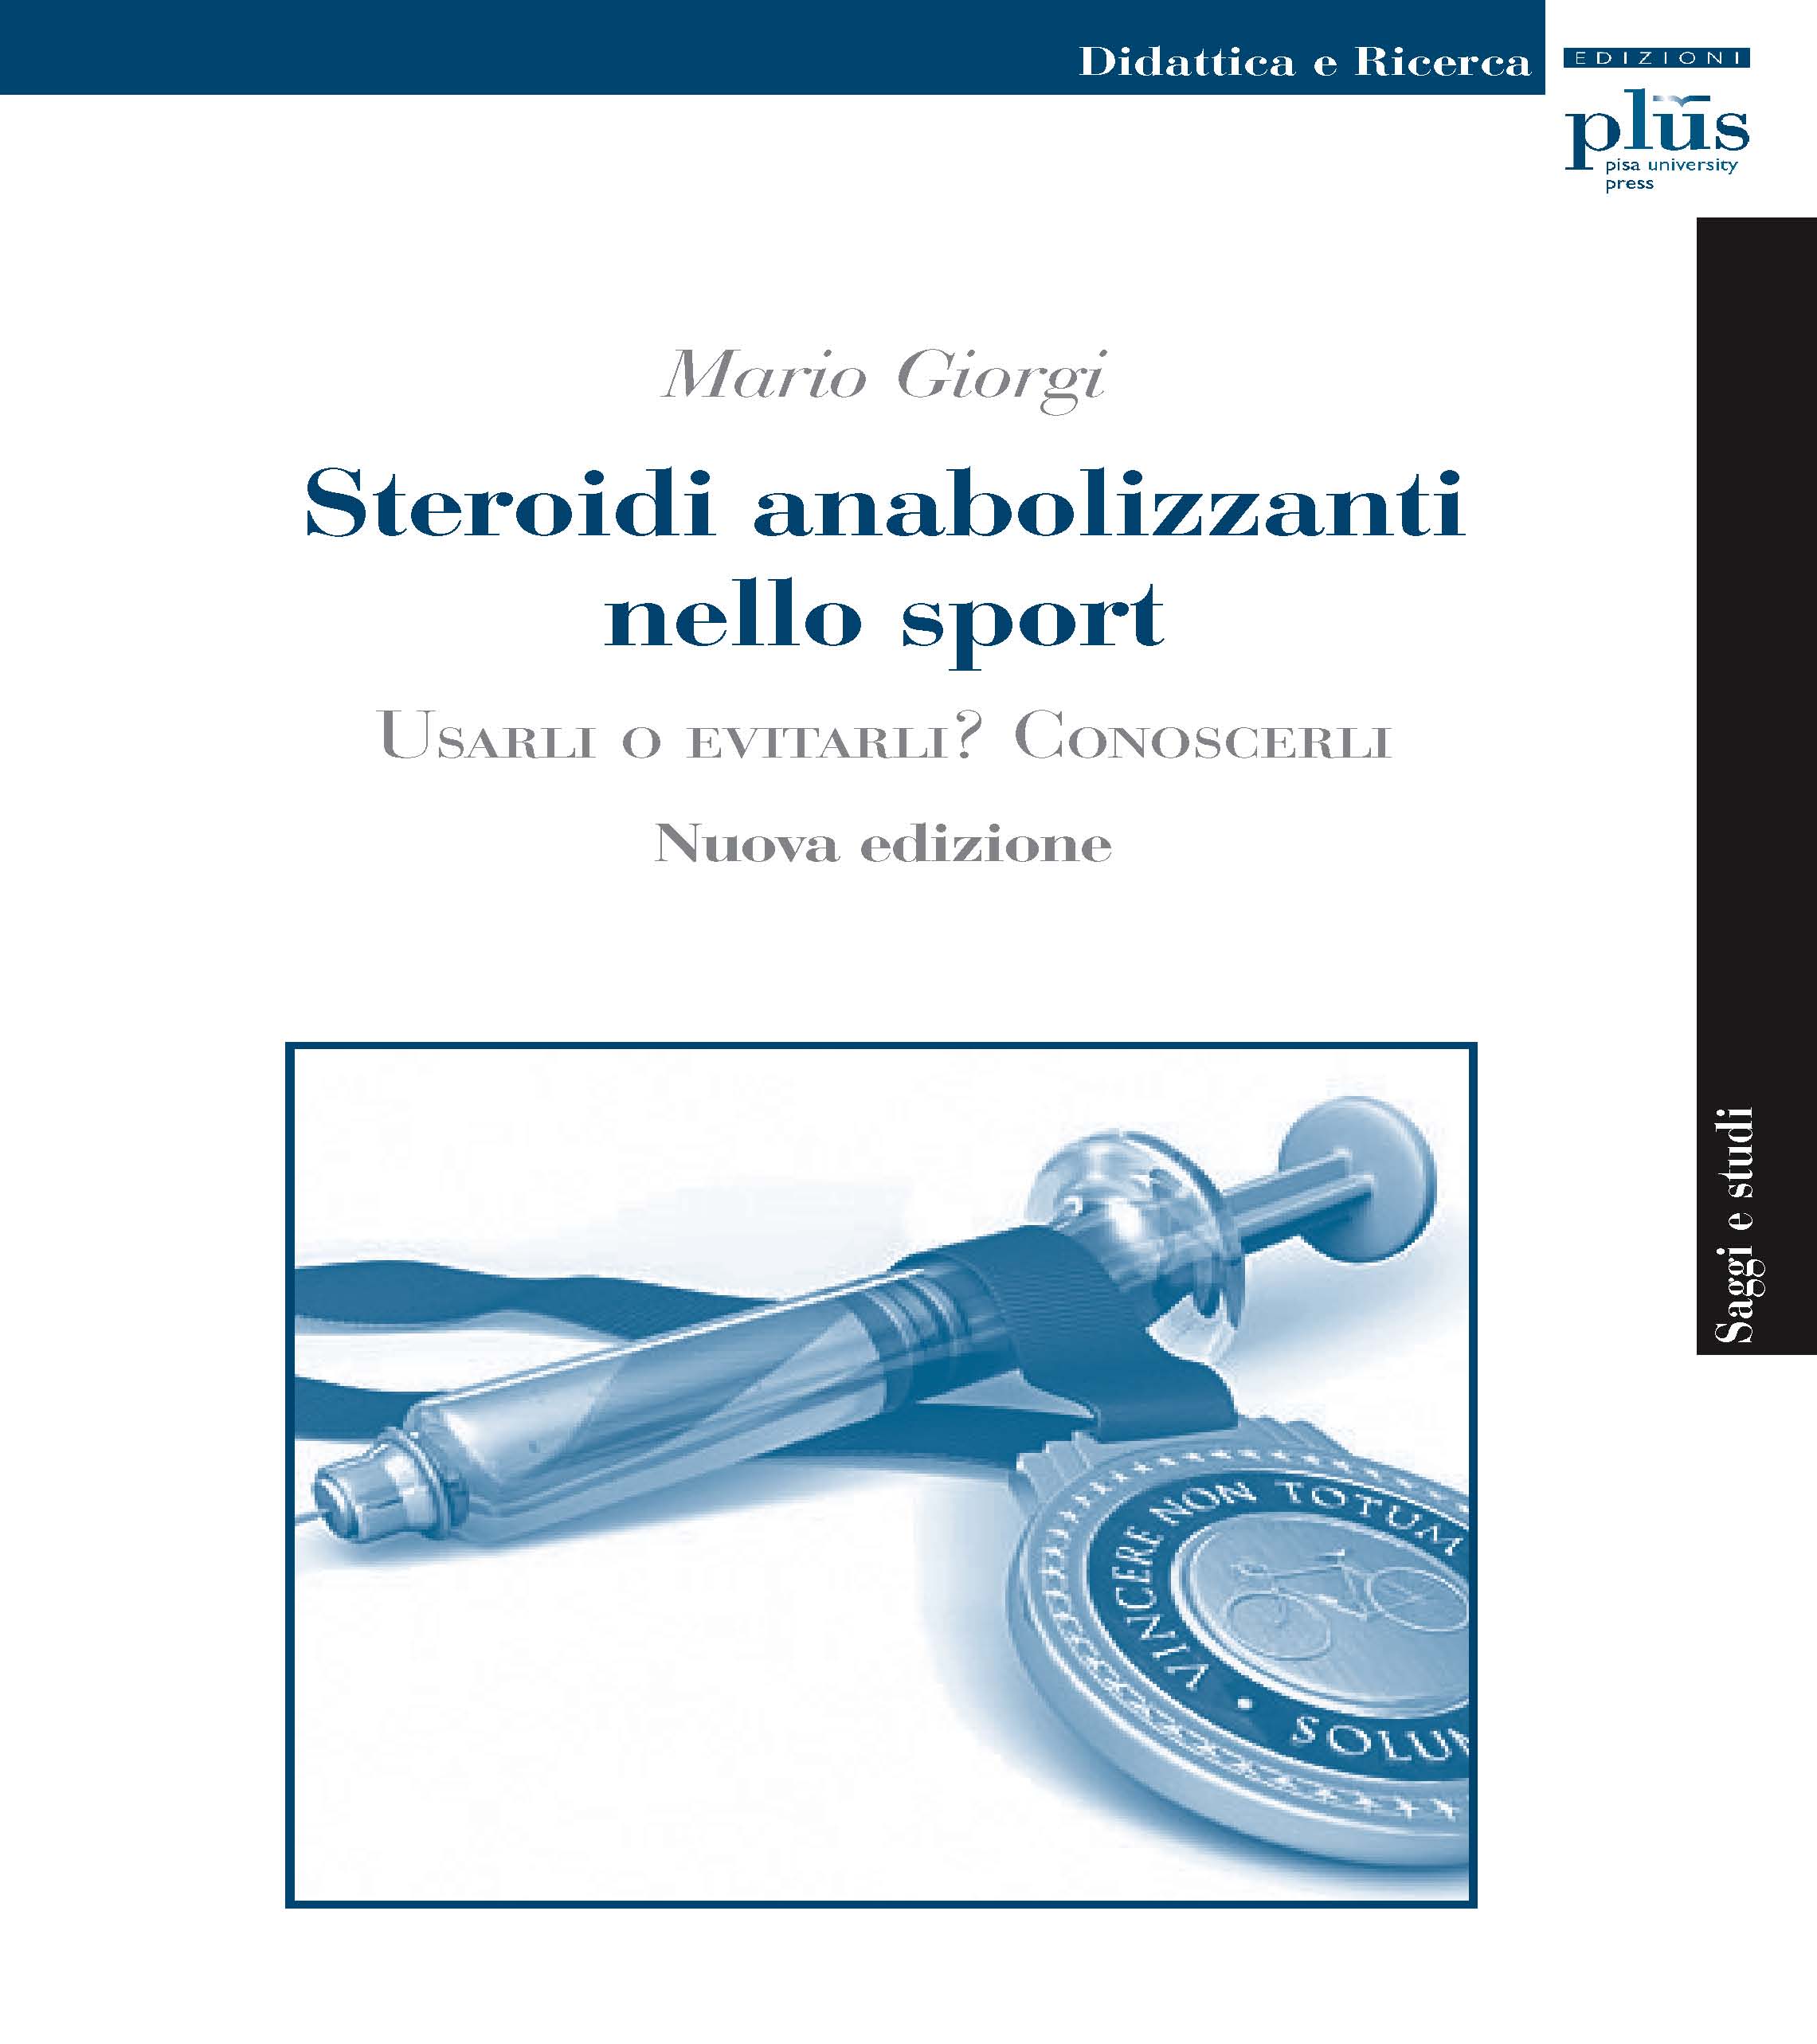 E-book, Steroidi anabolizzanti nello sport : usarli o evitarli? : conoscerli, PLUS-Pisa University Press